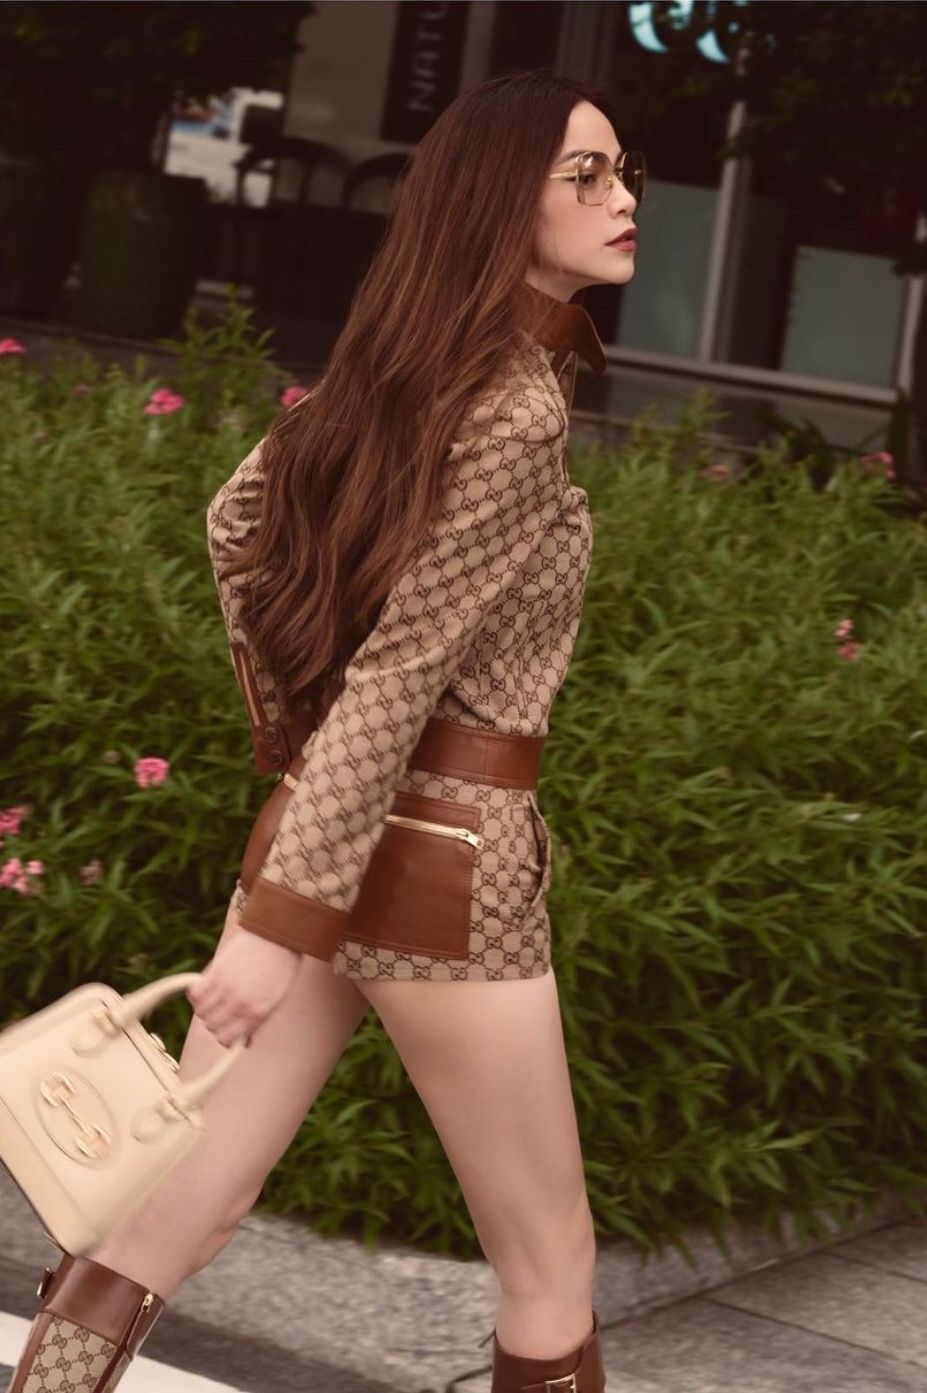  
Bộ ảnh đầu tiên của Hồ Ngọc Hà sau giãn cách, tại đây người đẹp diện cả cây đồ hiệu Gucci quen thuộc, từ outfit, giày đến túi. (Ảnh: IGNV)